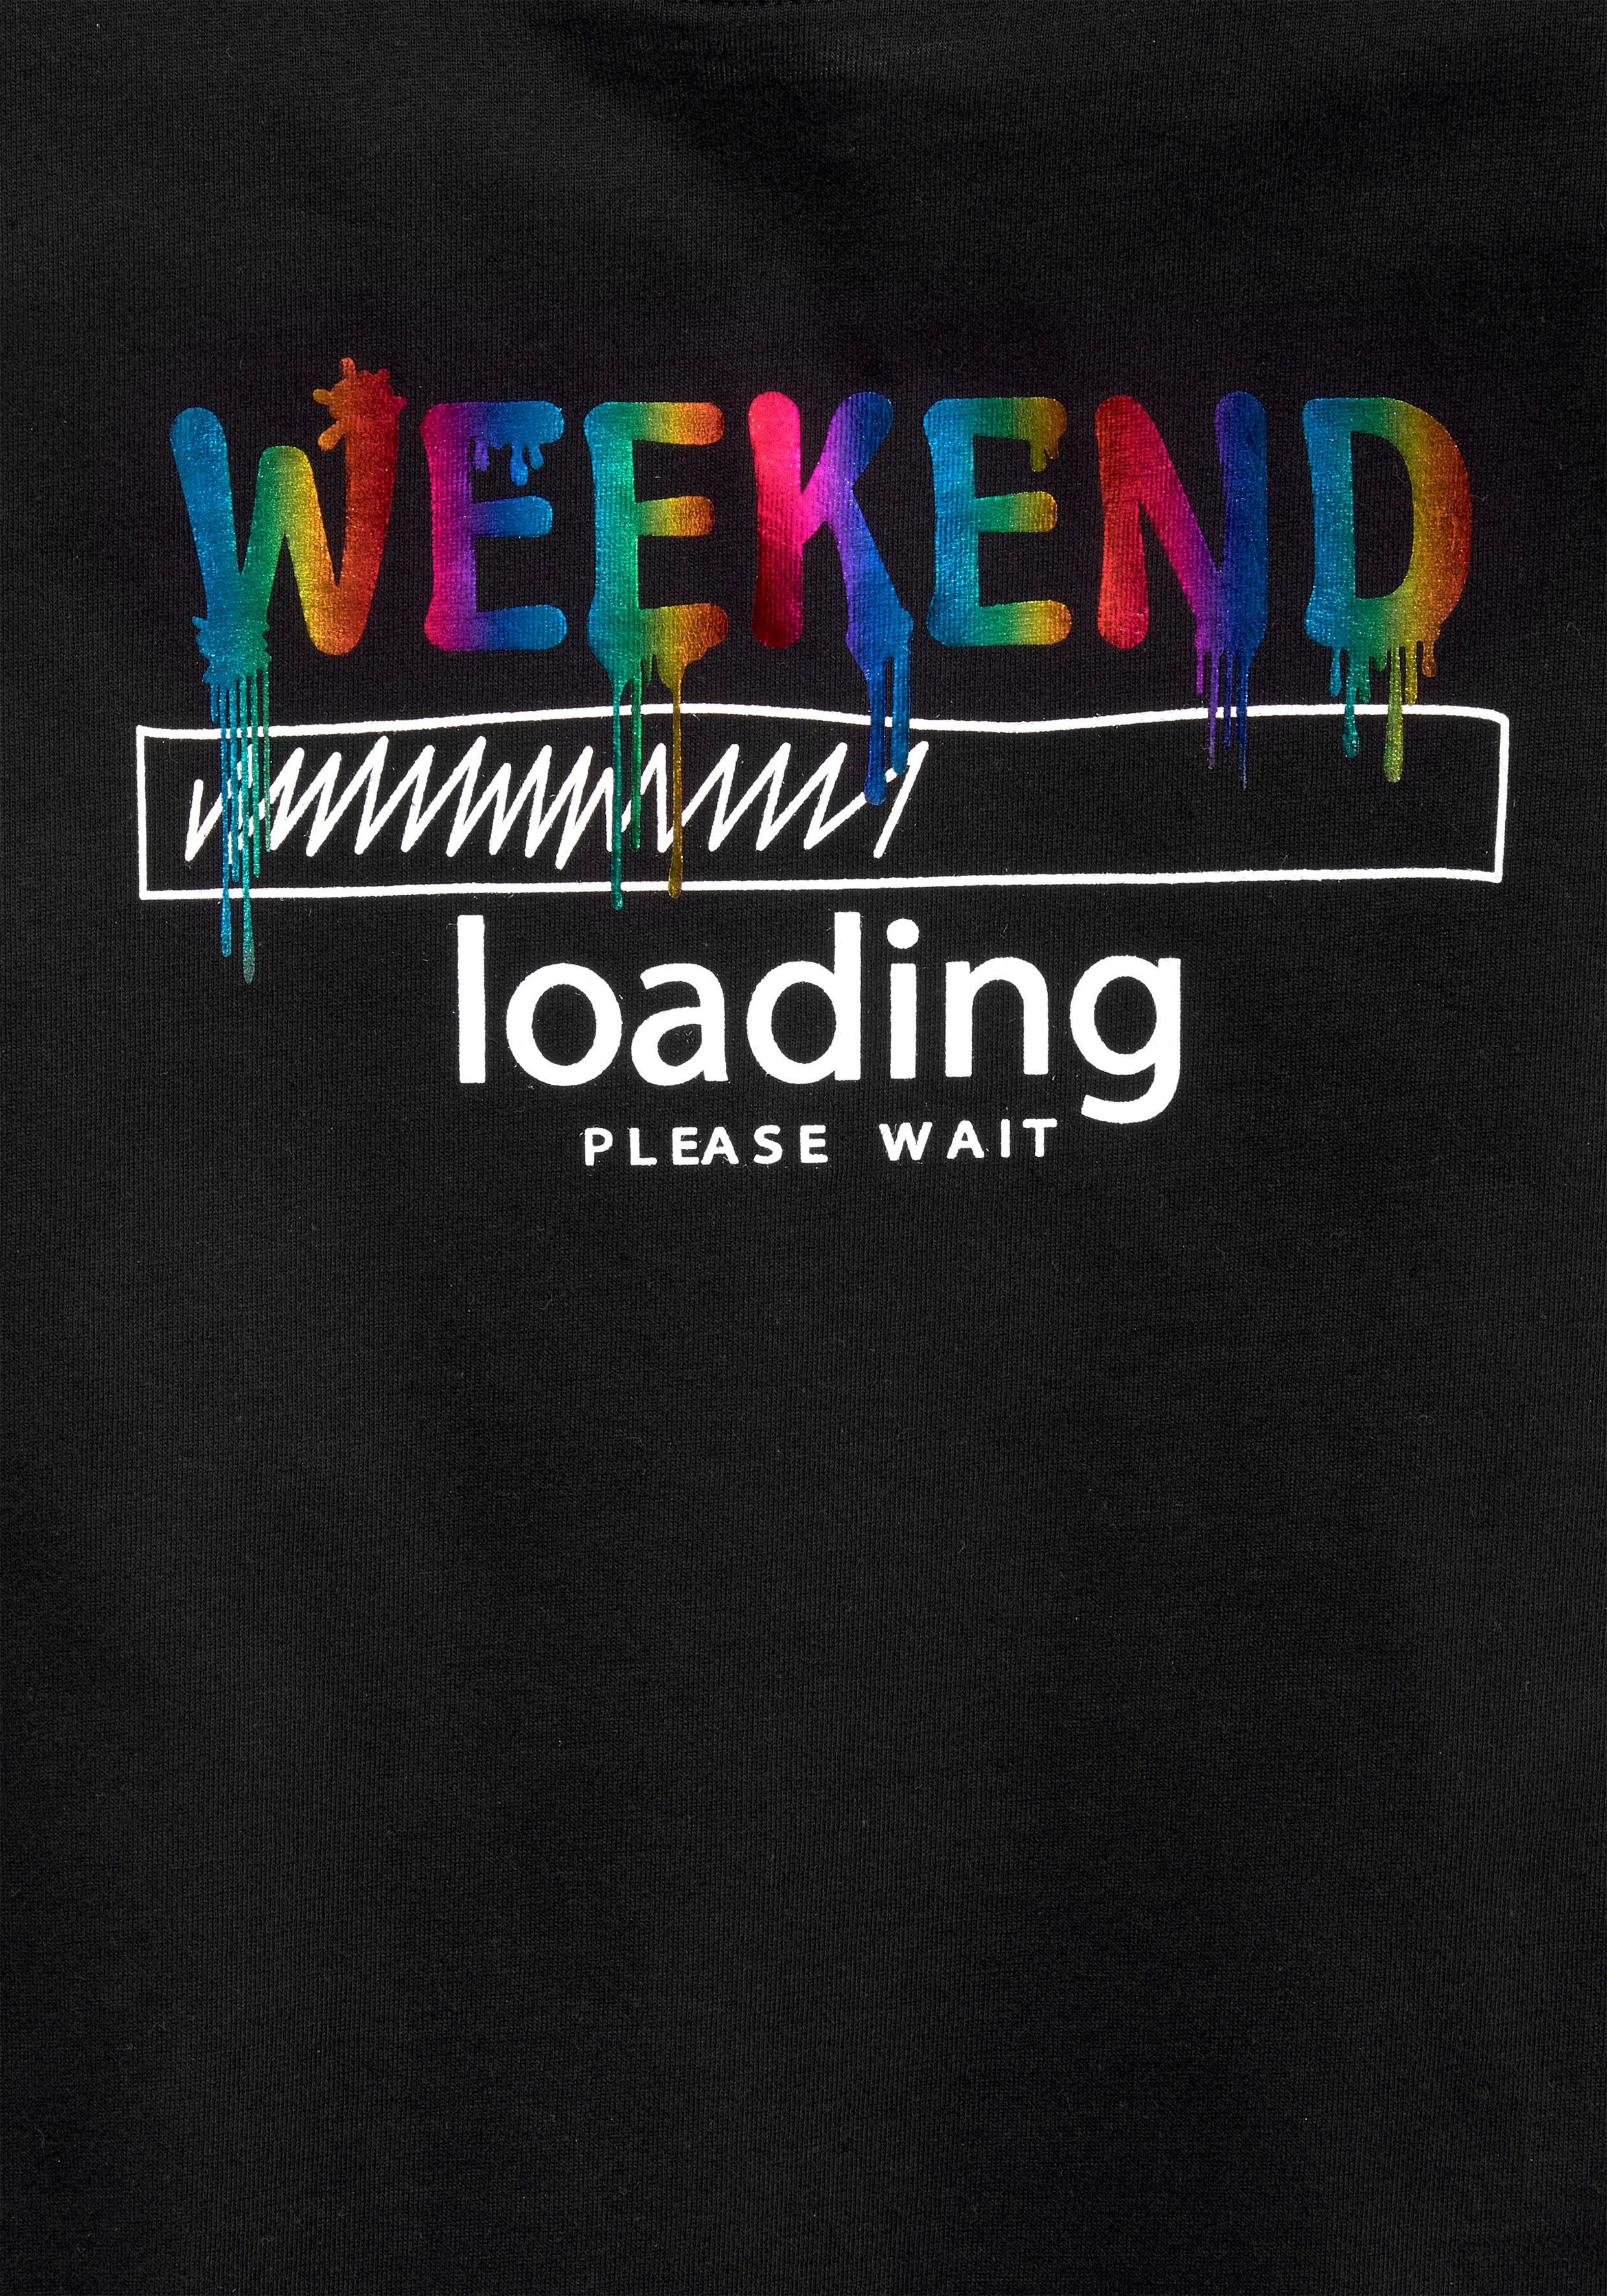 legerer wait KIDSWORLD weiter WEEKEND Regenbogen-Druckfarben T-Shirt Form, loading...please in sind unterschiedlich